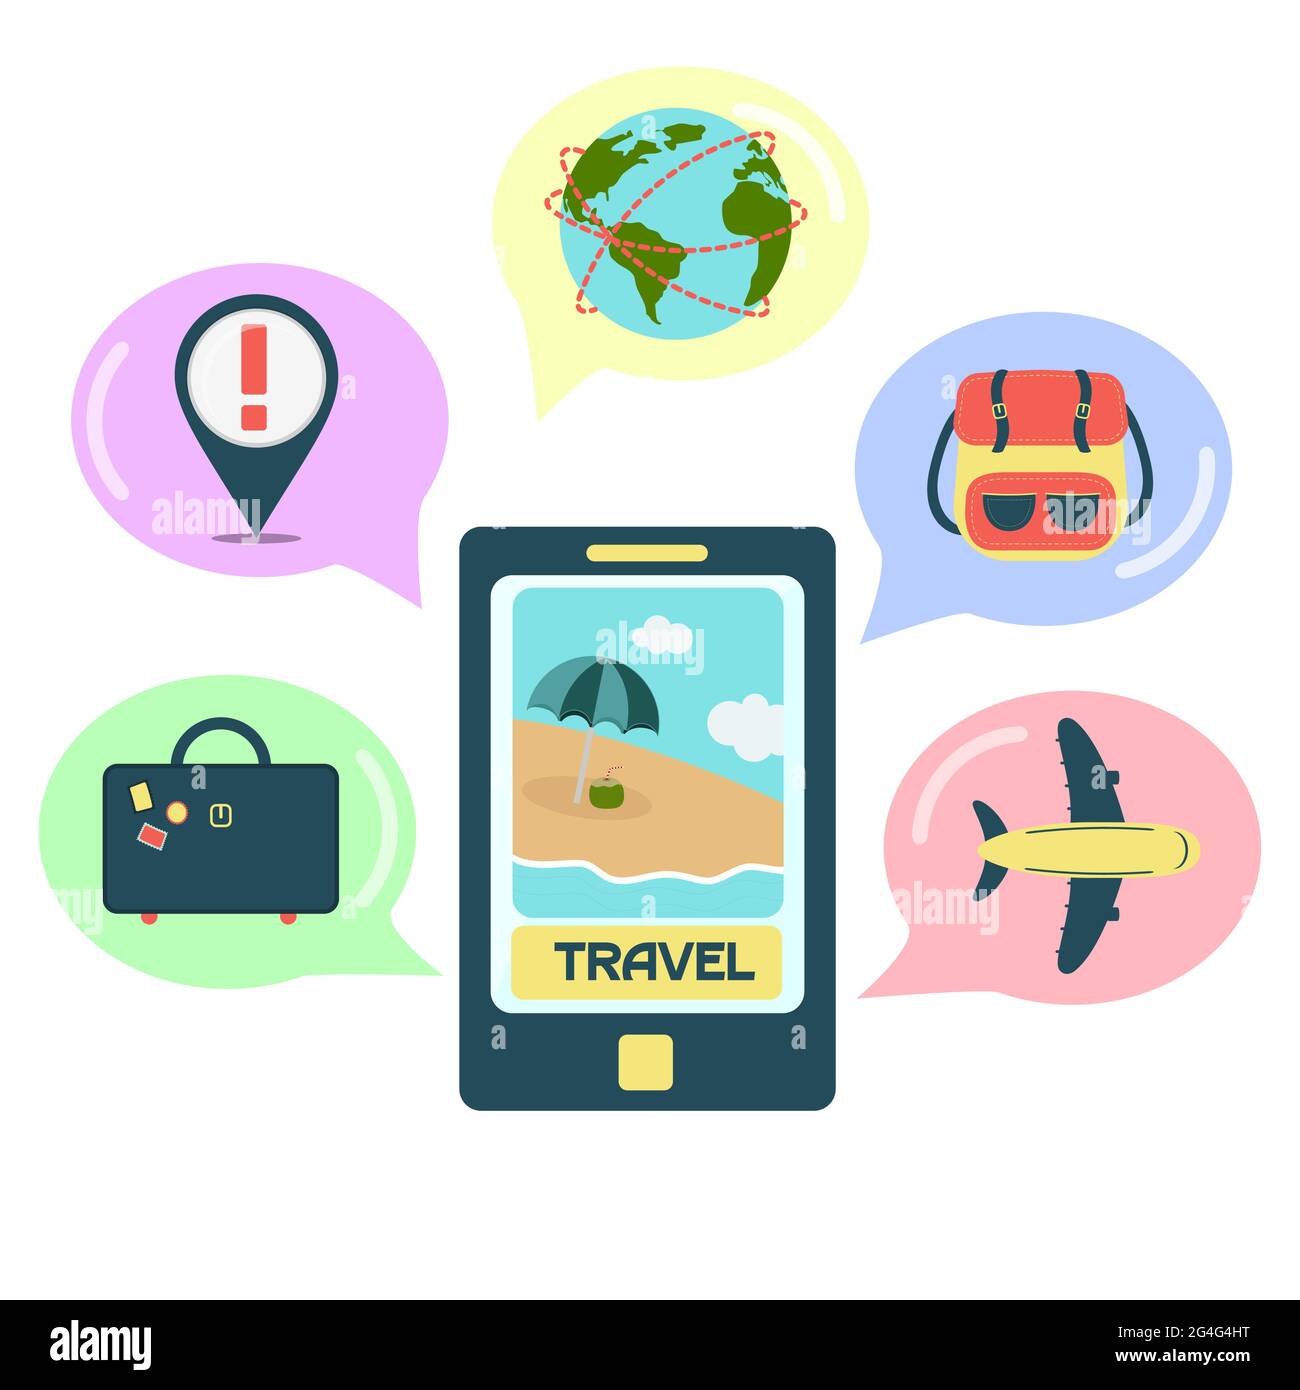 Reise-Anwendung auf dem Smartphone mit Ballons und Reise-Icons. Weißer Hintergrund. Stock Vektor